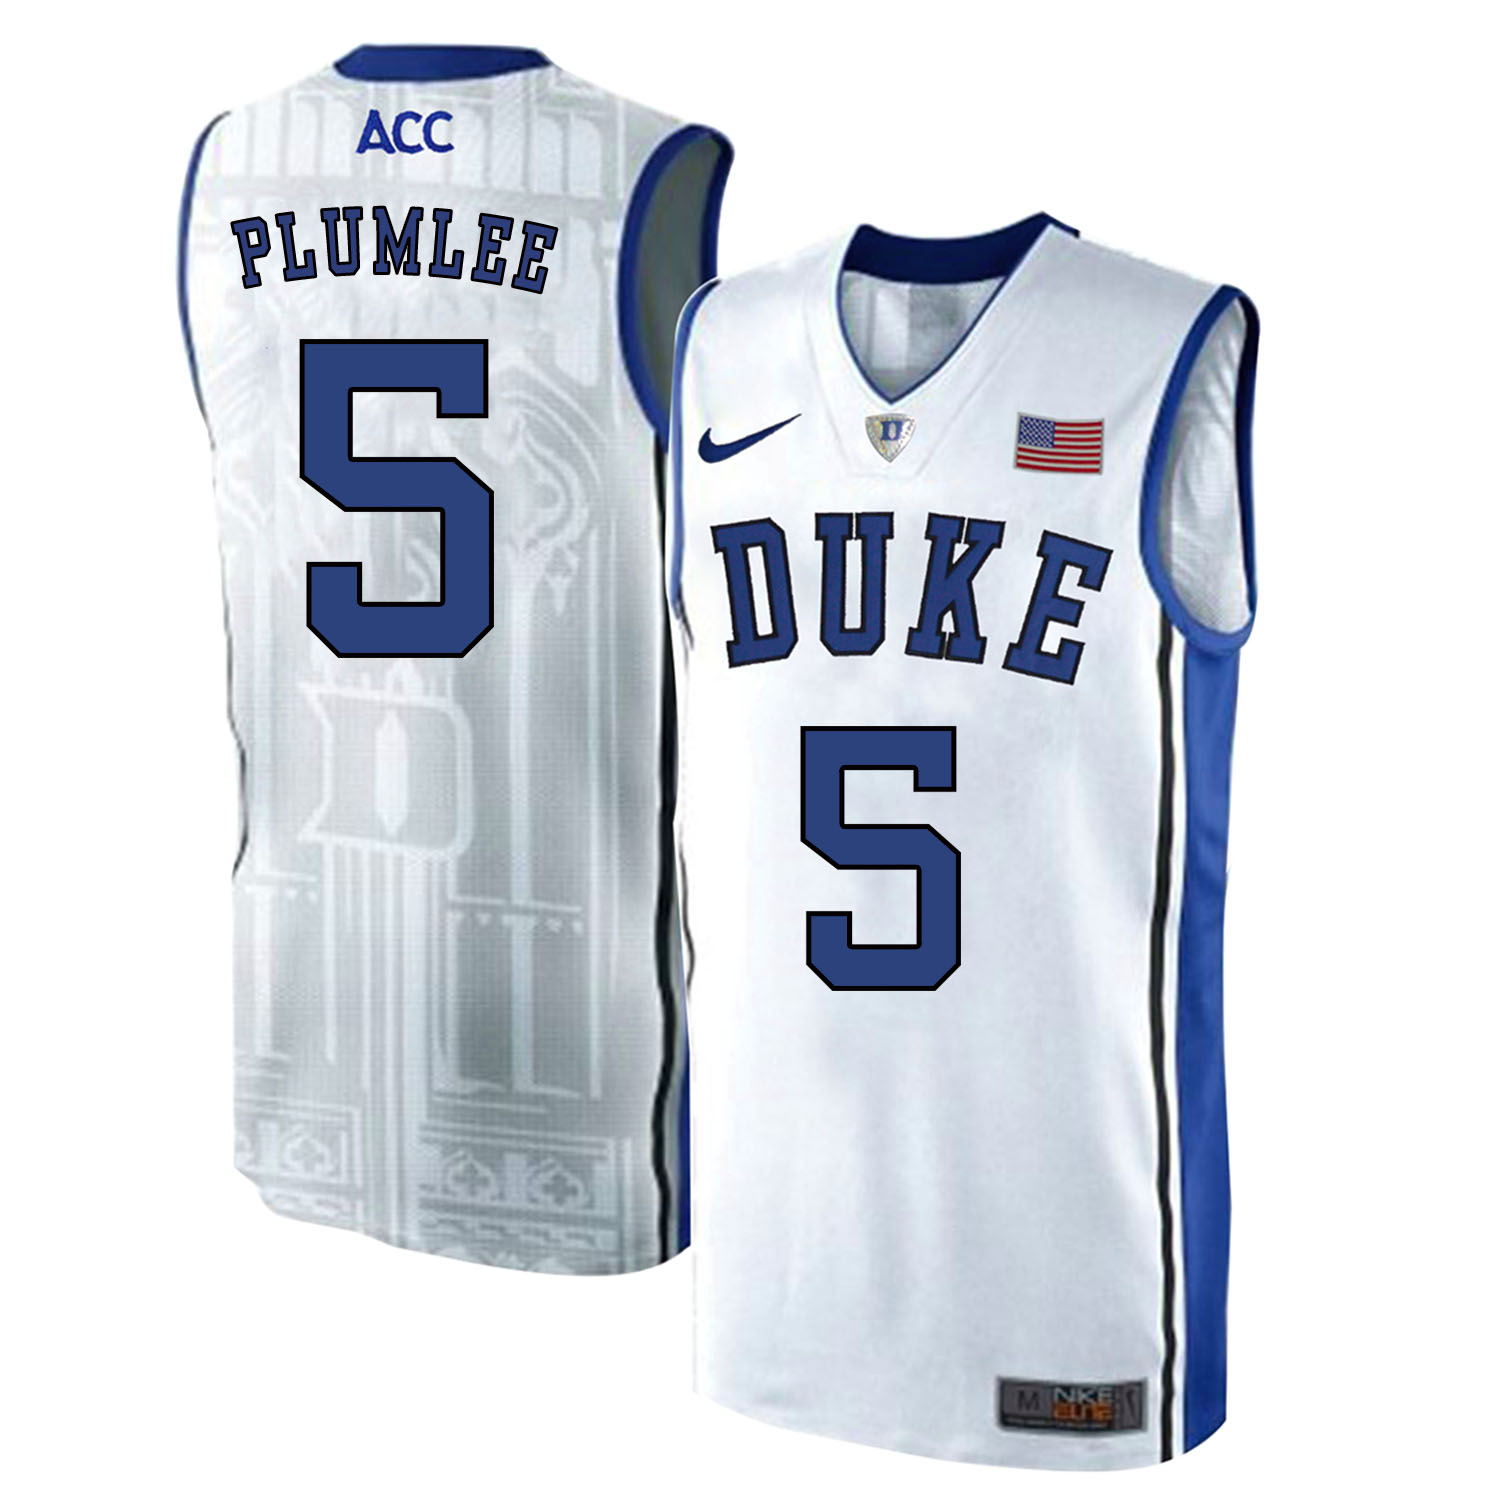 Duke Blue Devils 5 Mason Plumlee White Elite College Basketball Jersey